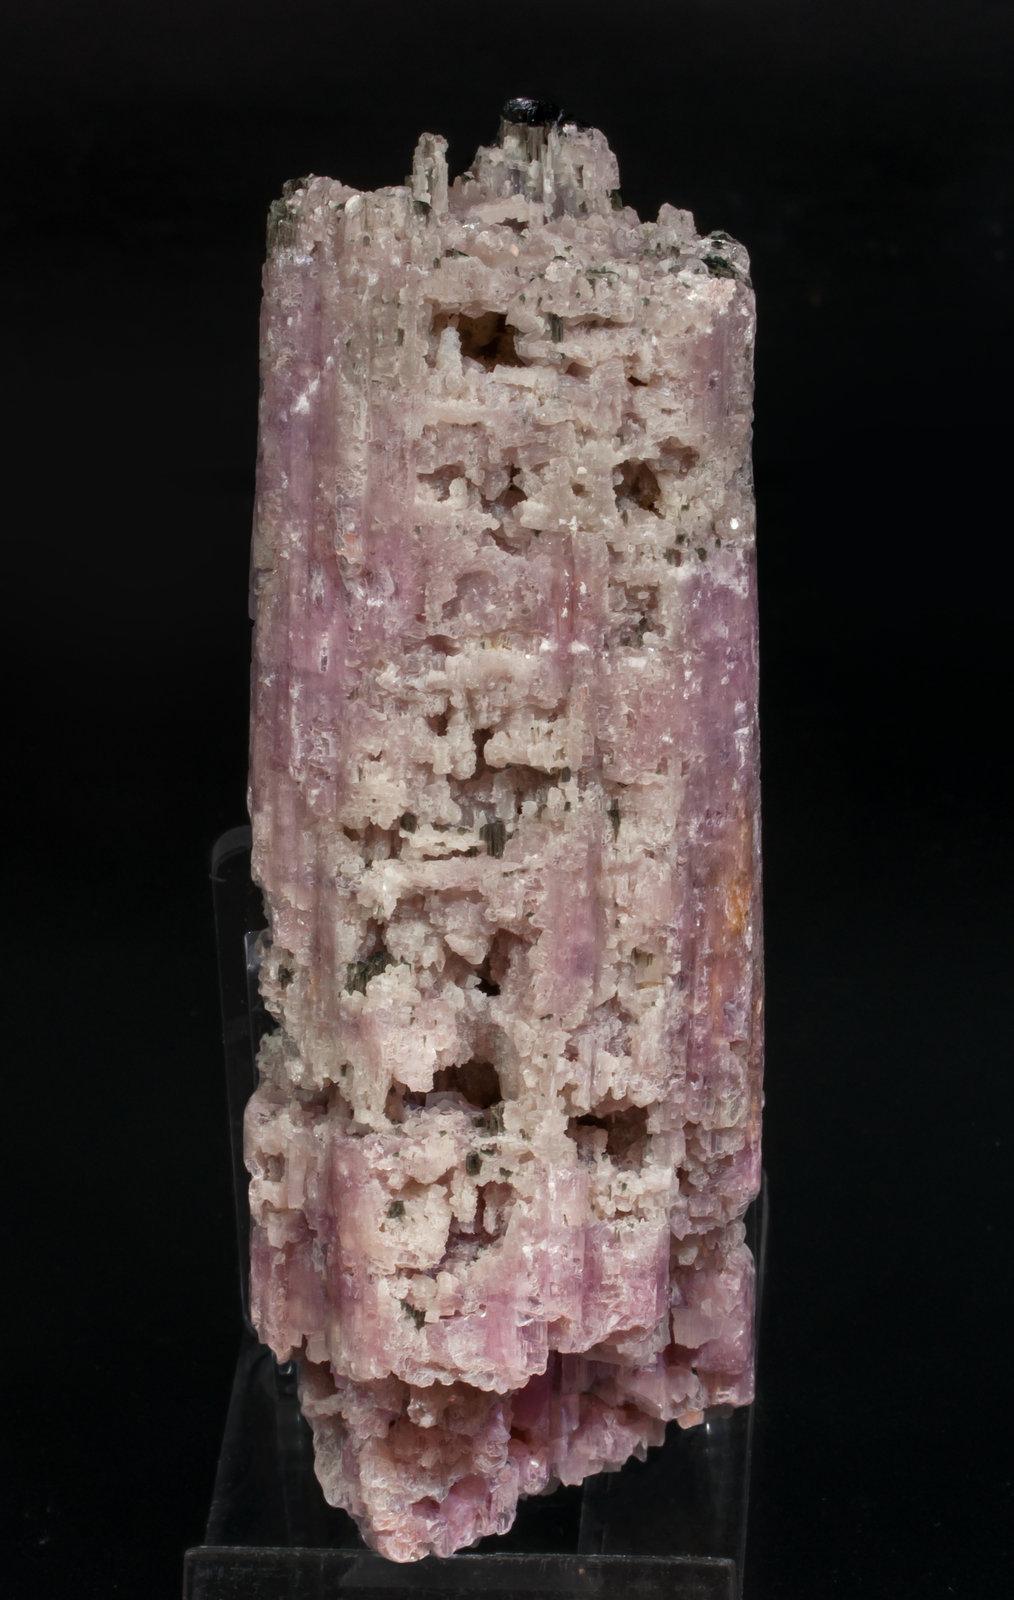 specimens/s_imagesAH2/Lepidolite-NX51AH2r.jpg